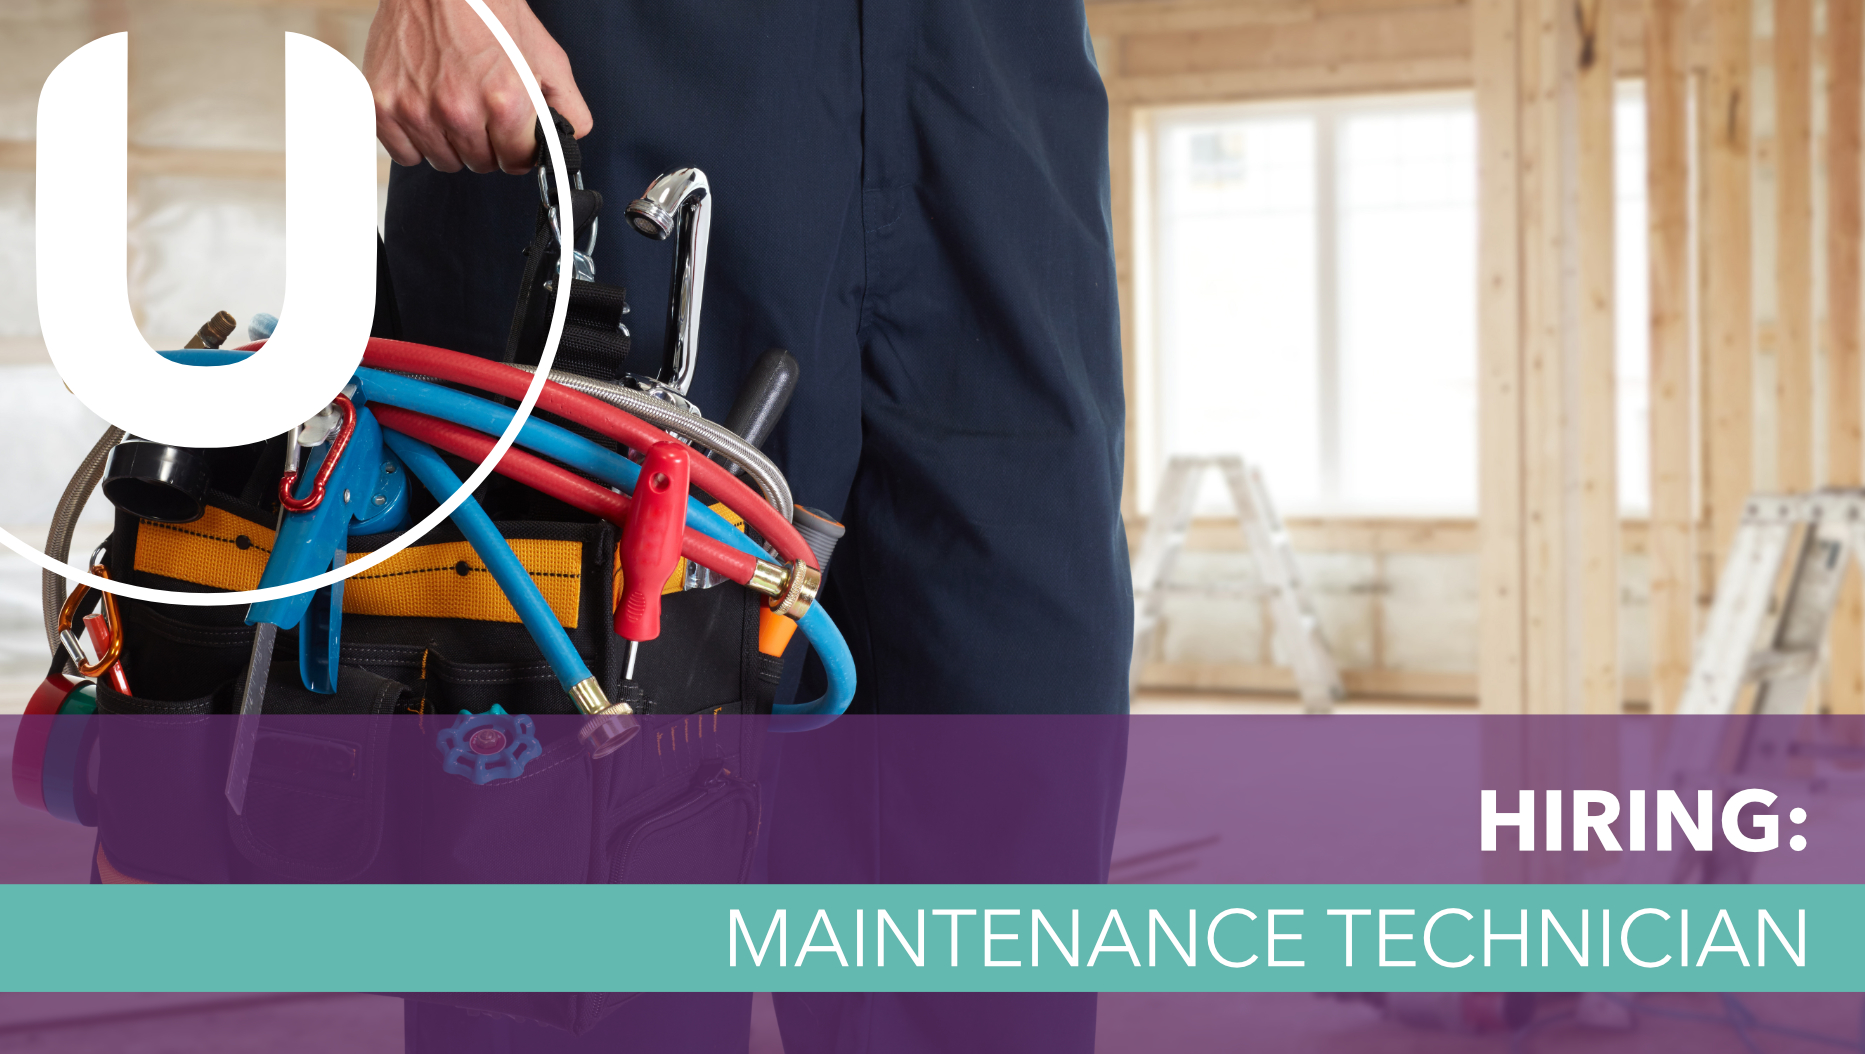 Hiring: Maintenance Technician